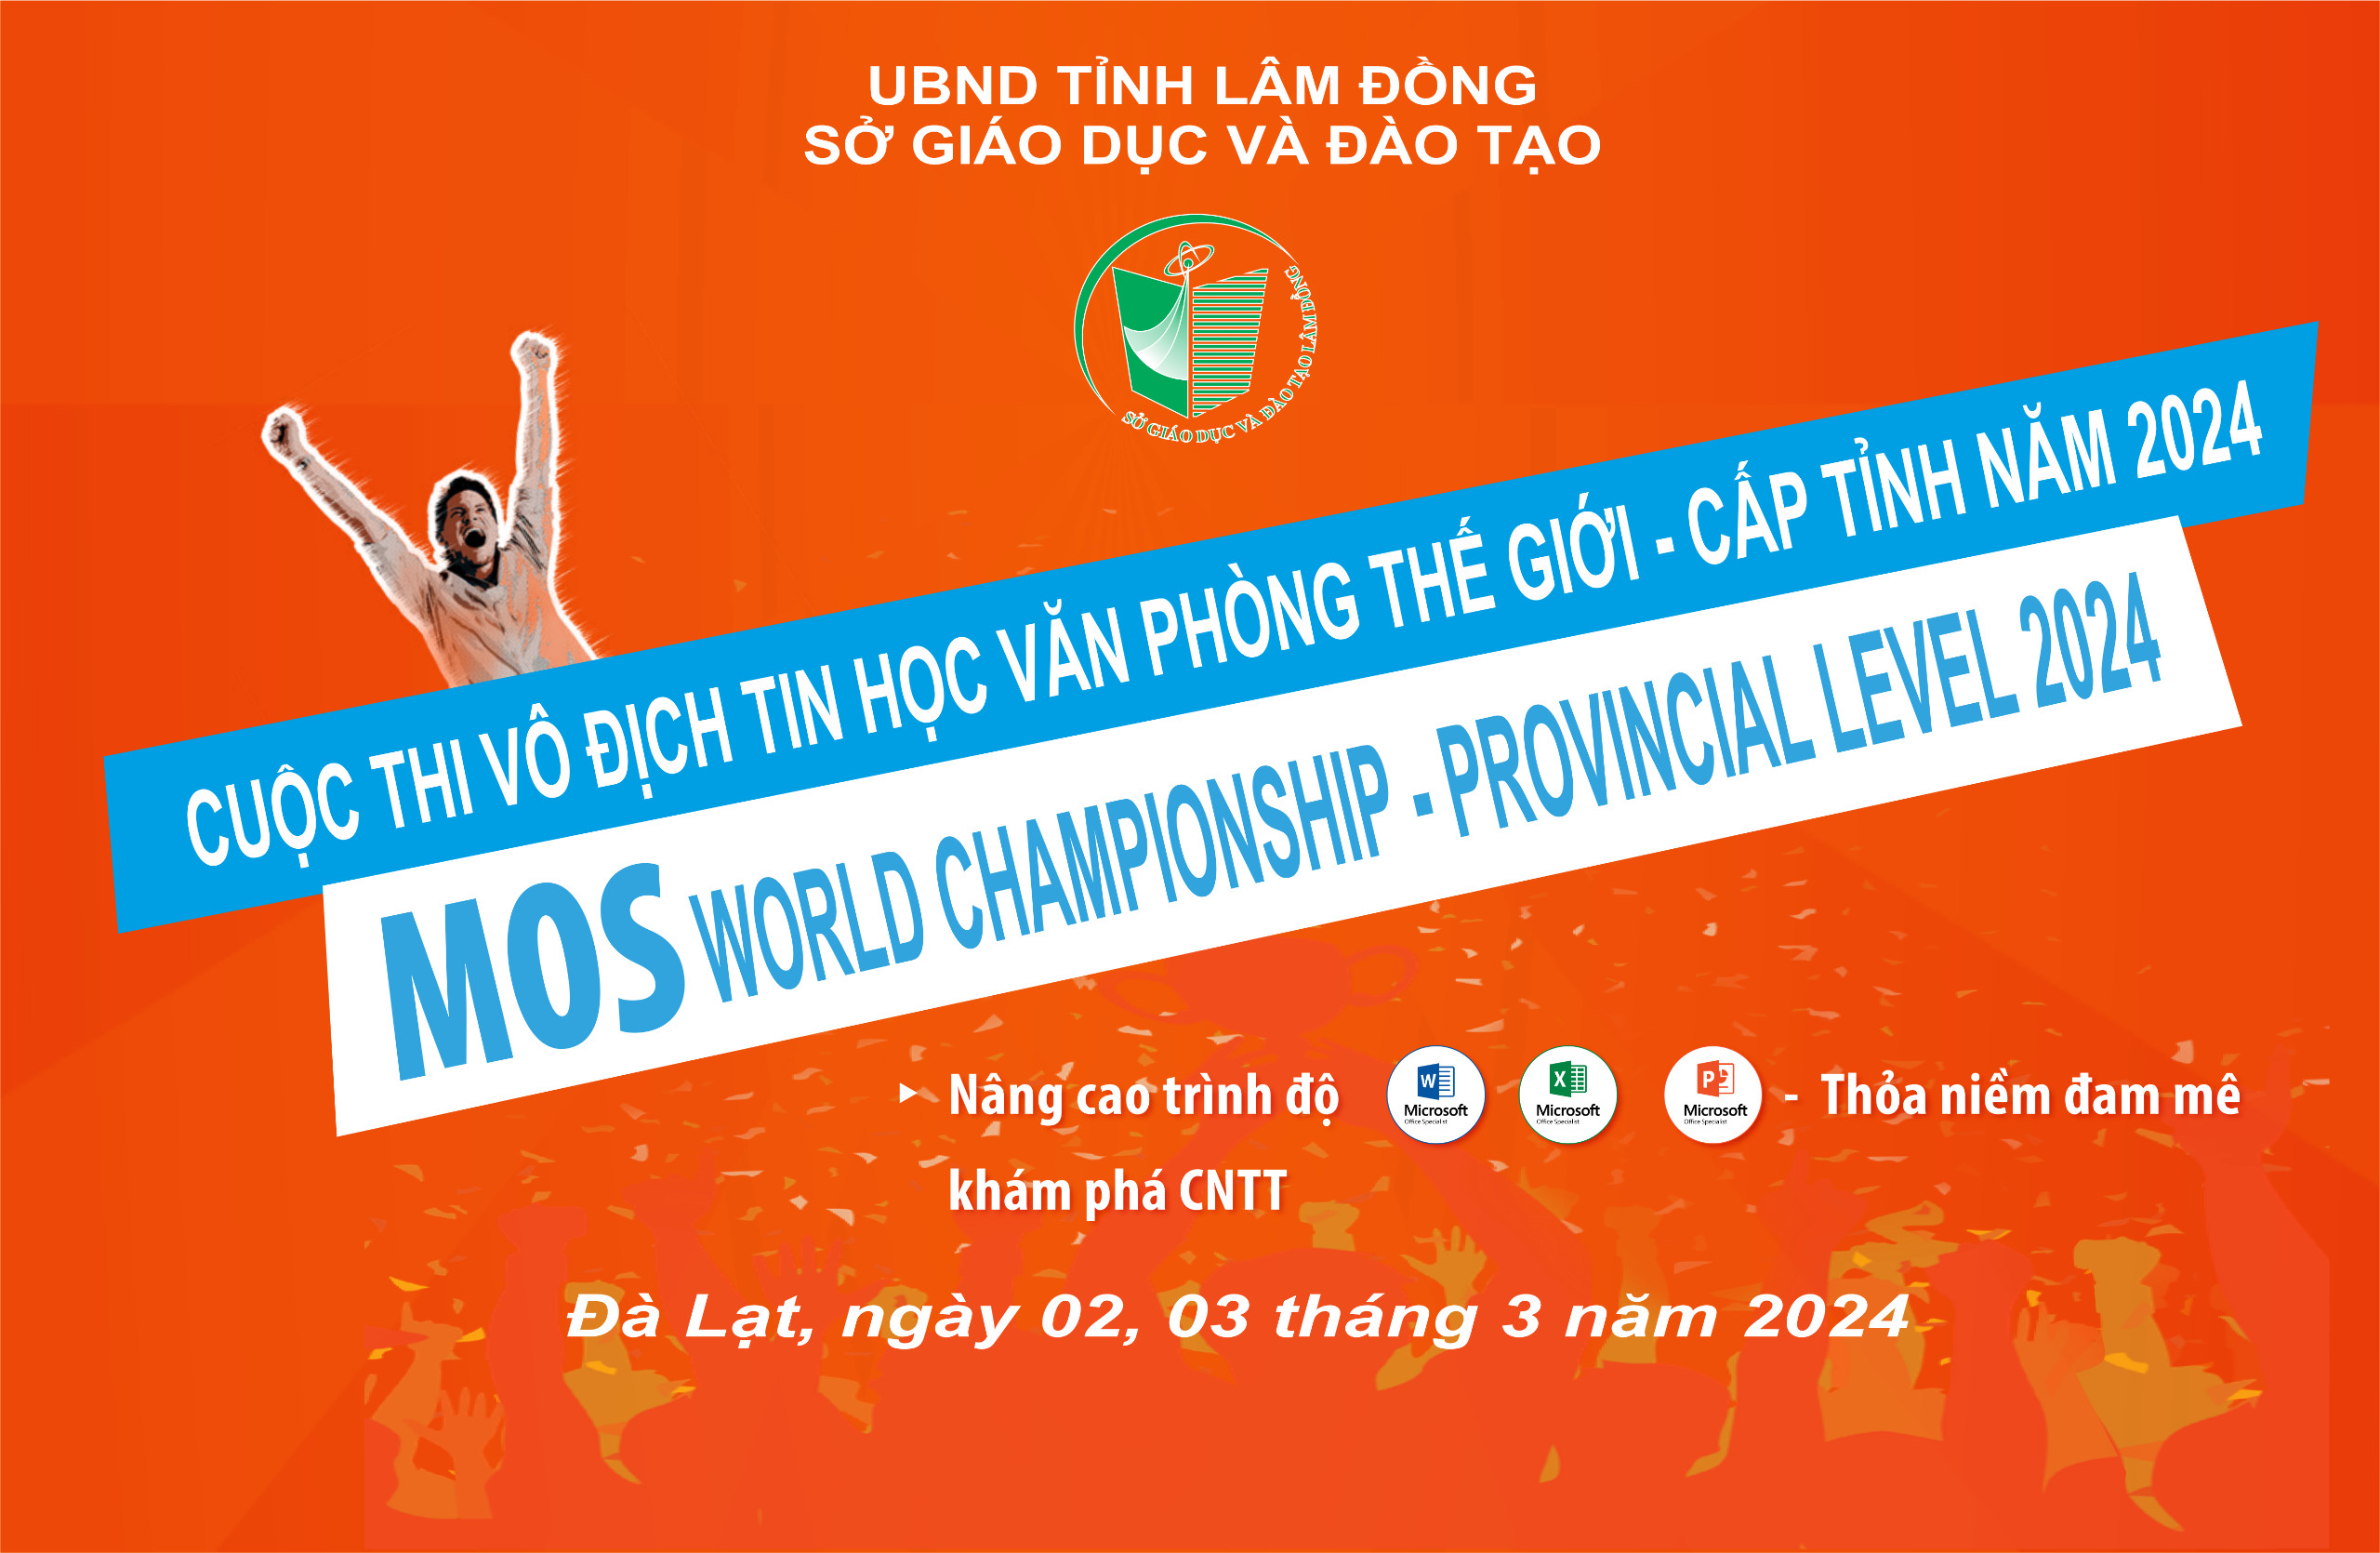 Lâm Đồng tổ chức Cuộc thi Vô địch Tin học Văn phòng thế giới cấp tỉnh năm 2024